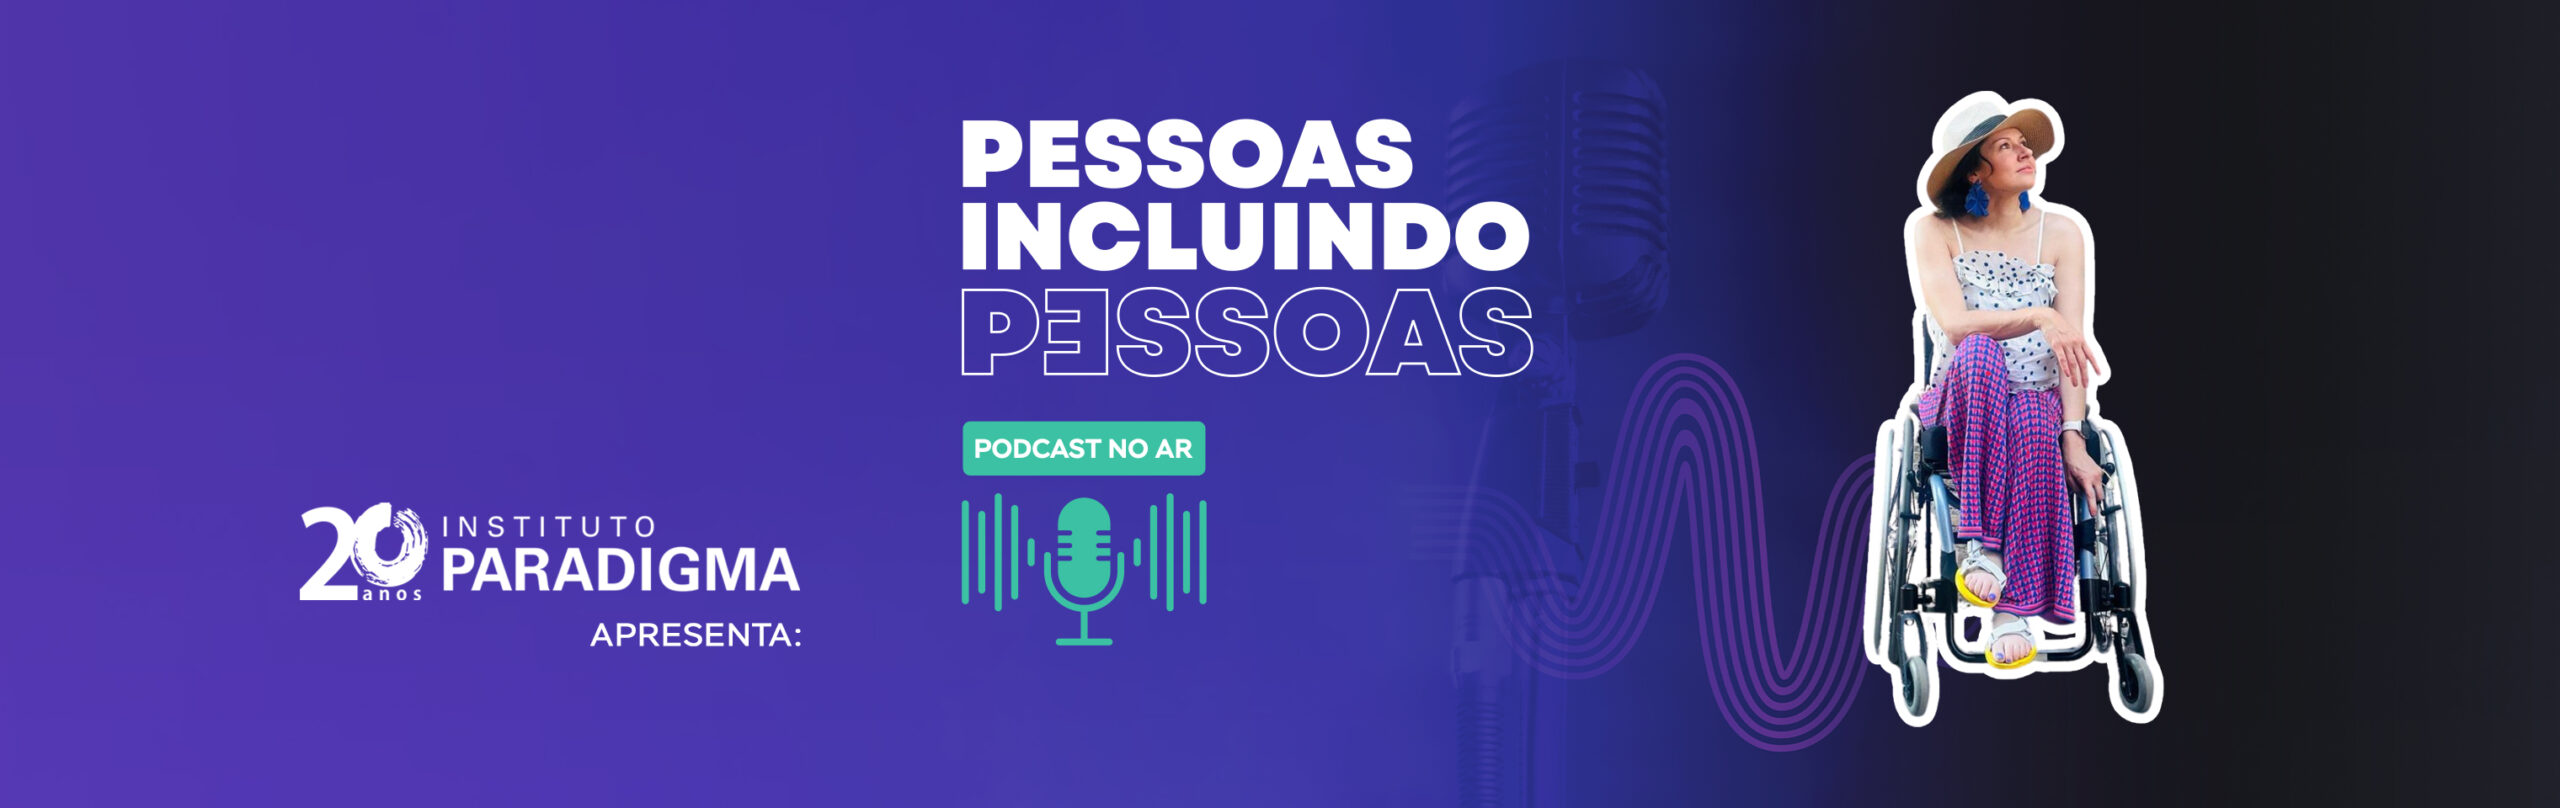 Podcast PESSOAS INCLUINDO PESSOAS, com Michele Simões